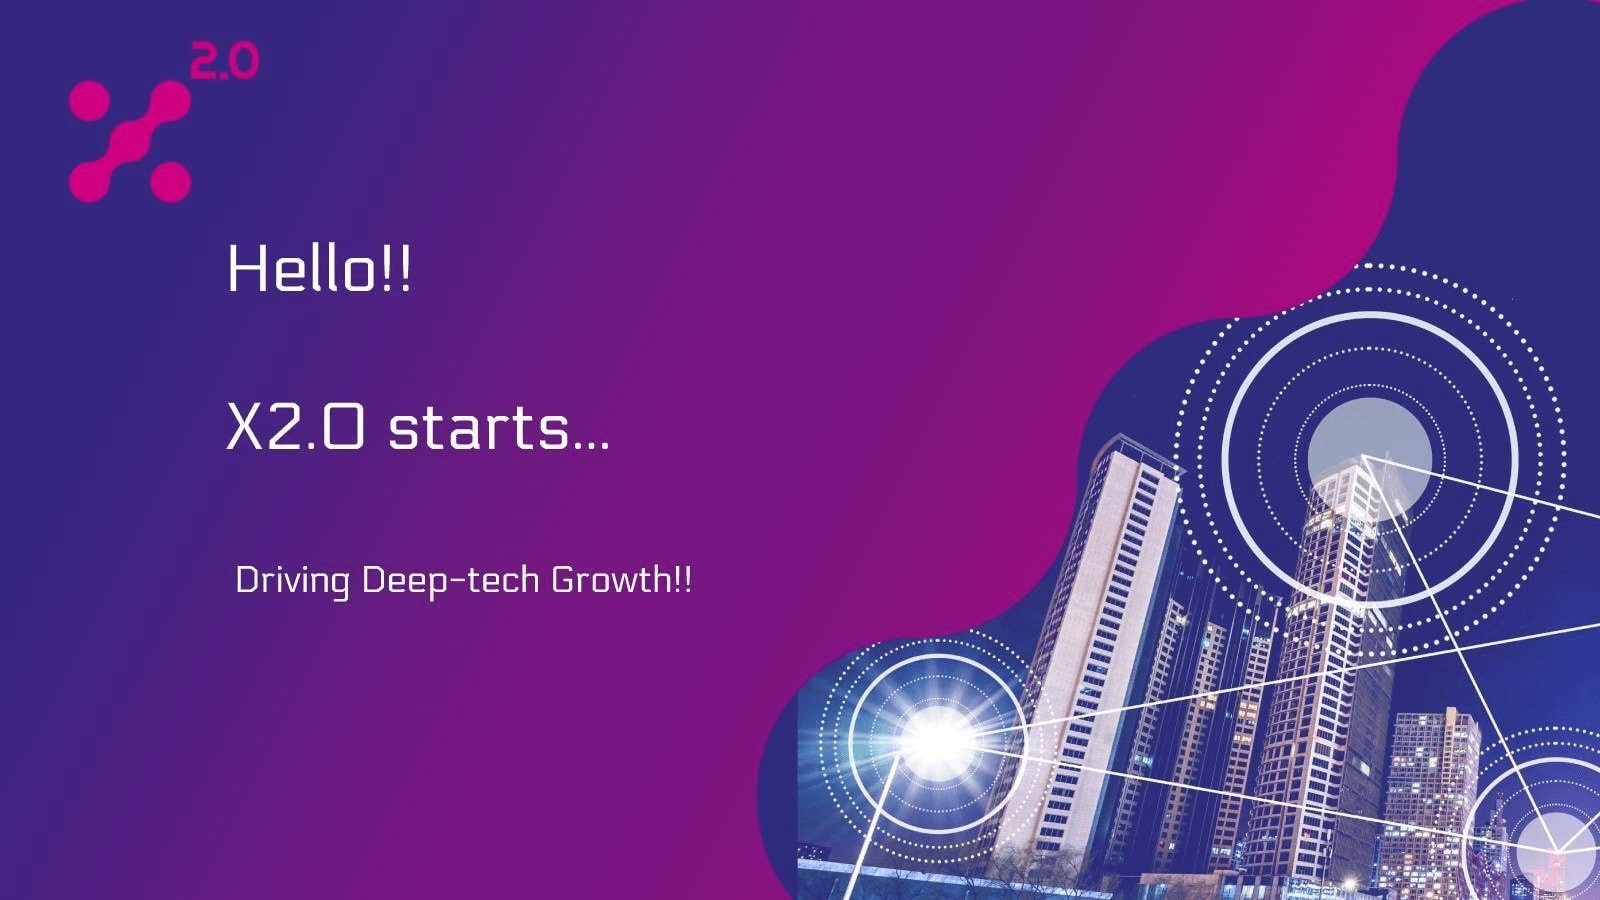 Driving deeptech growth  X 2.0!